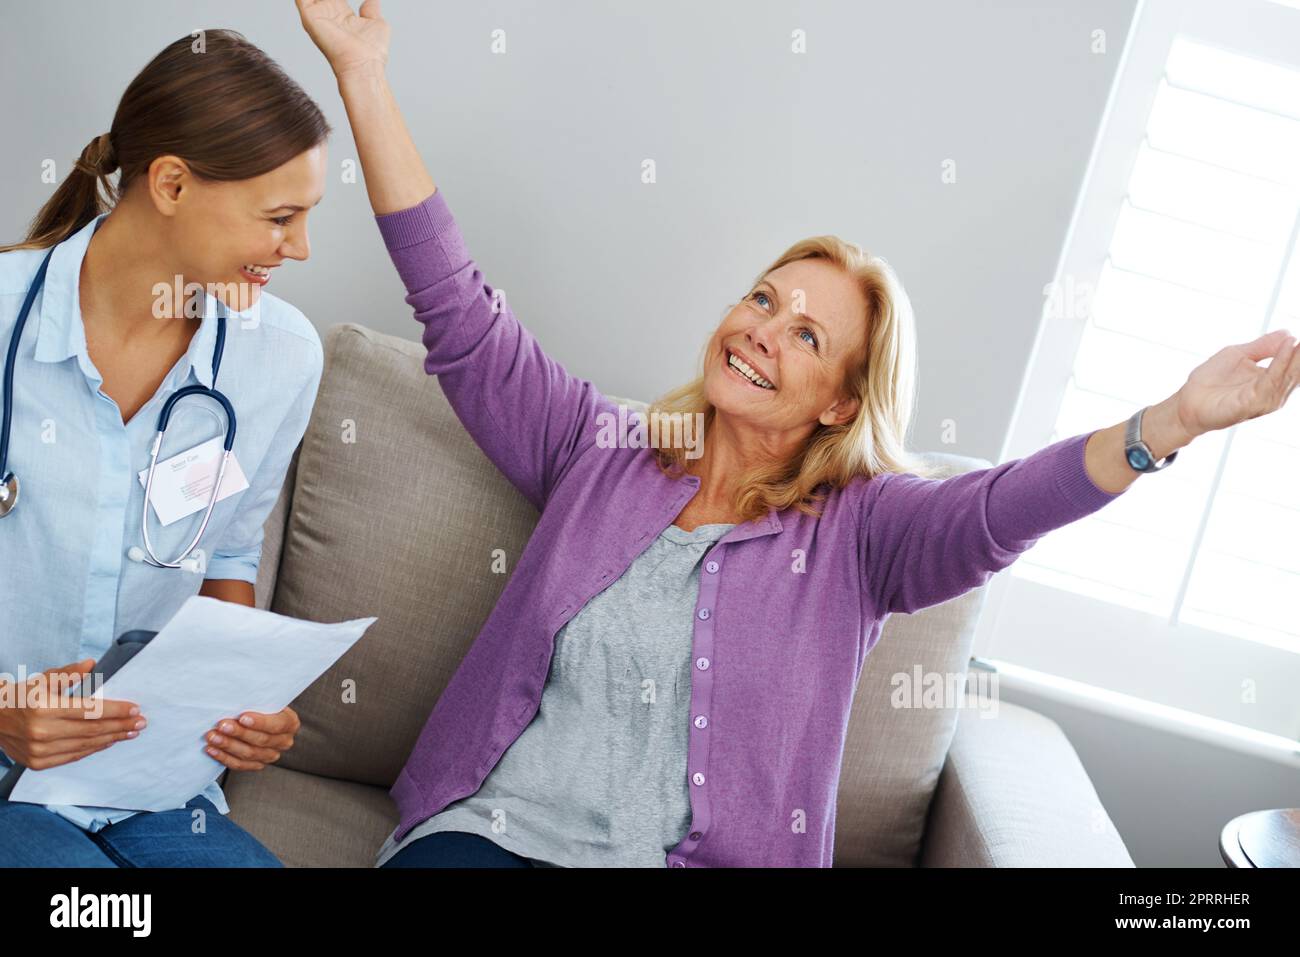 Im free. Una donna soddisfatta dal feedback dell'infermiera. Foto Stock